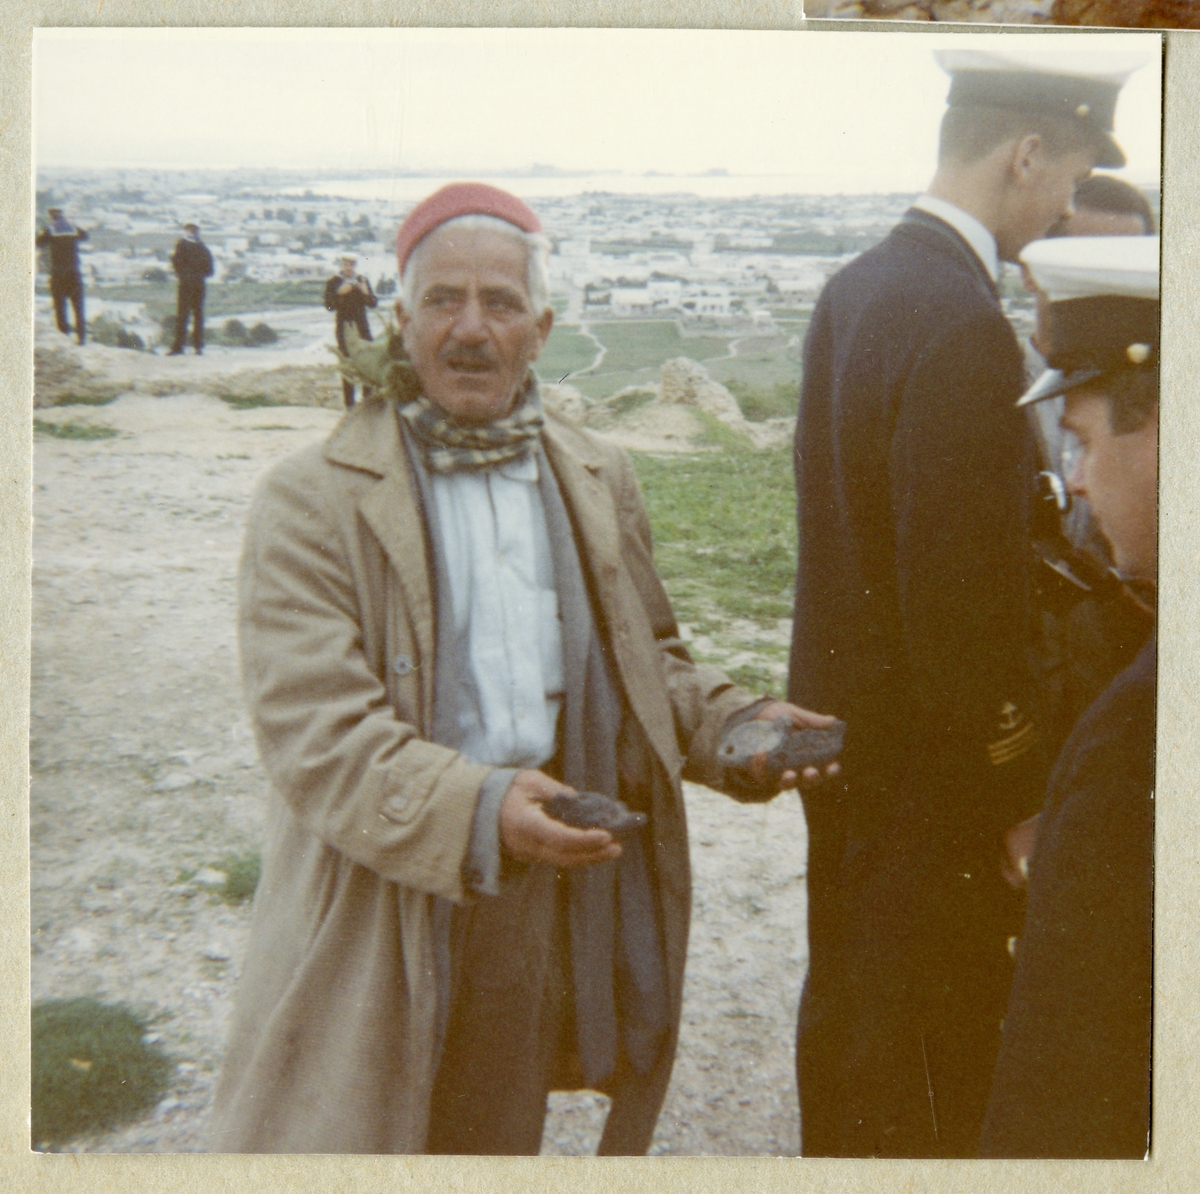 Bilden föreställer en man som visar två föremål för uniformsklädda män från Älvsnabbens besättning i Karthago under långresan 1966-1967.